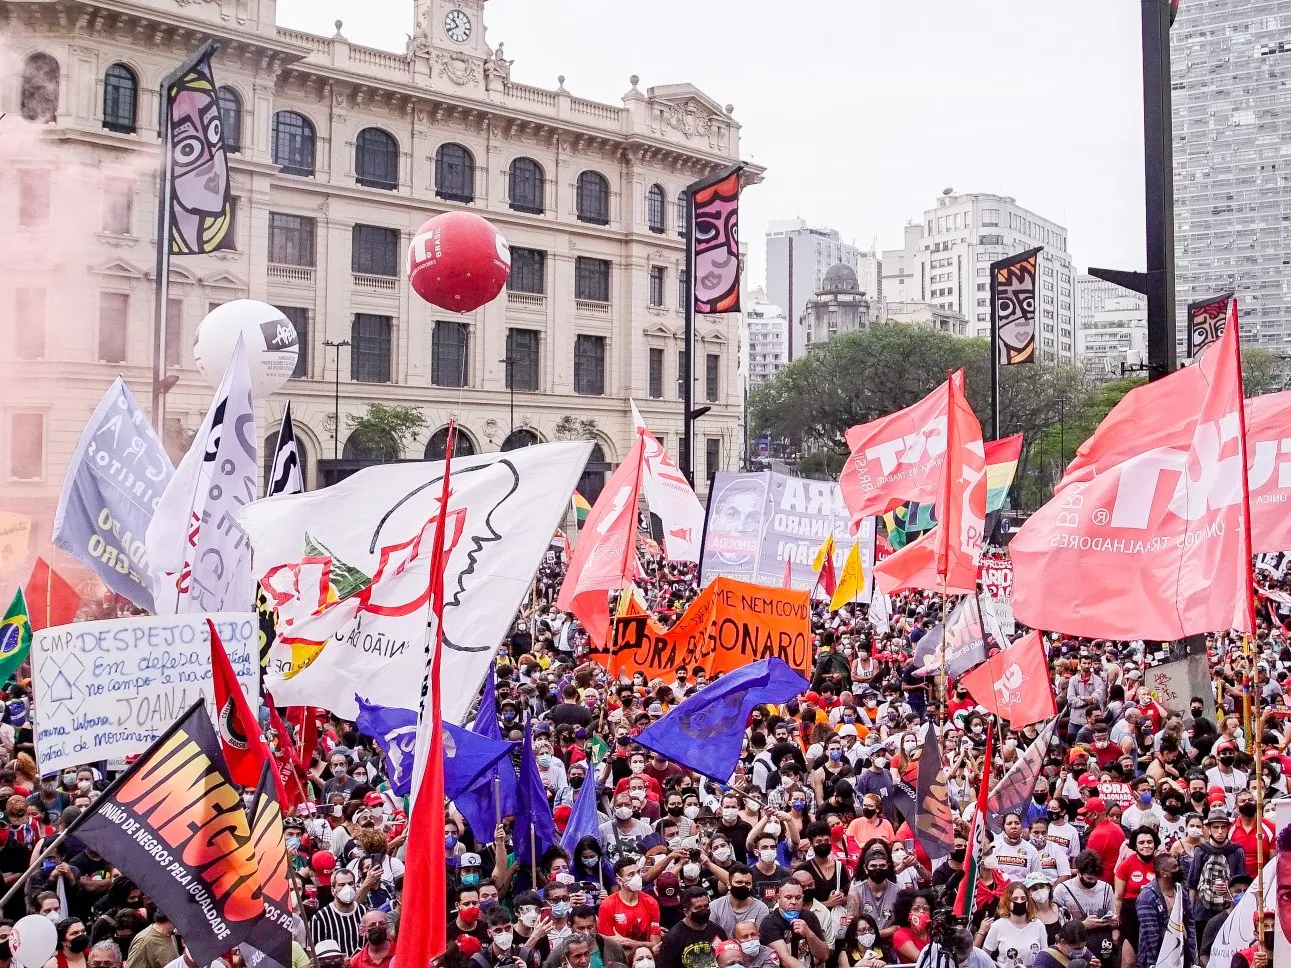 Manifestantes se reuniram no Vale do Anhangabaú, em São Paulo, em oposição aos atos pró-governo